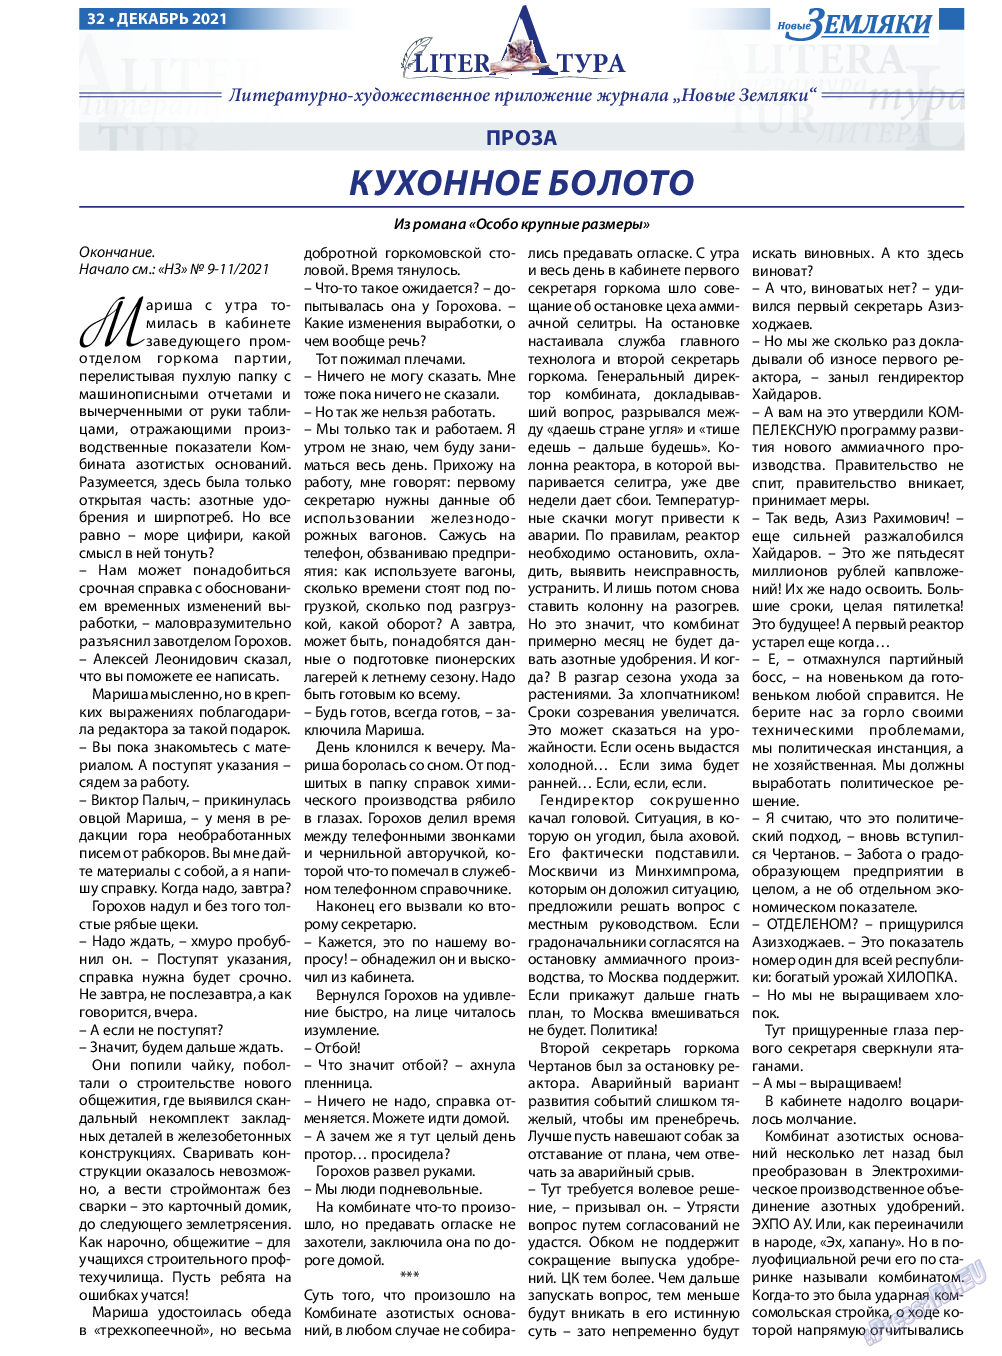 Новые Земляки, газета. 2021 №12 стр.32